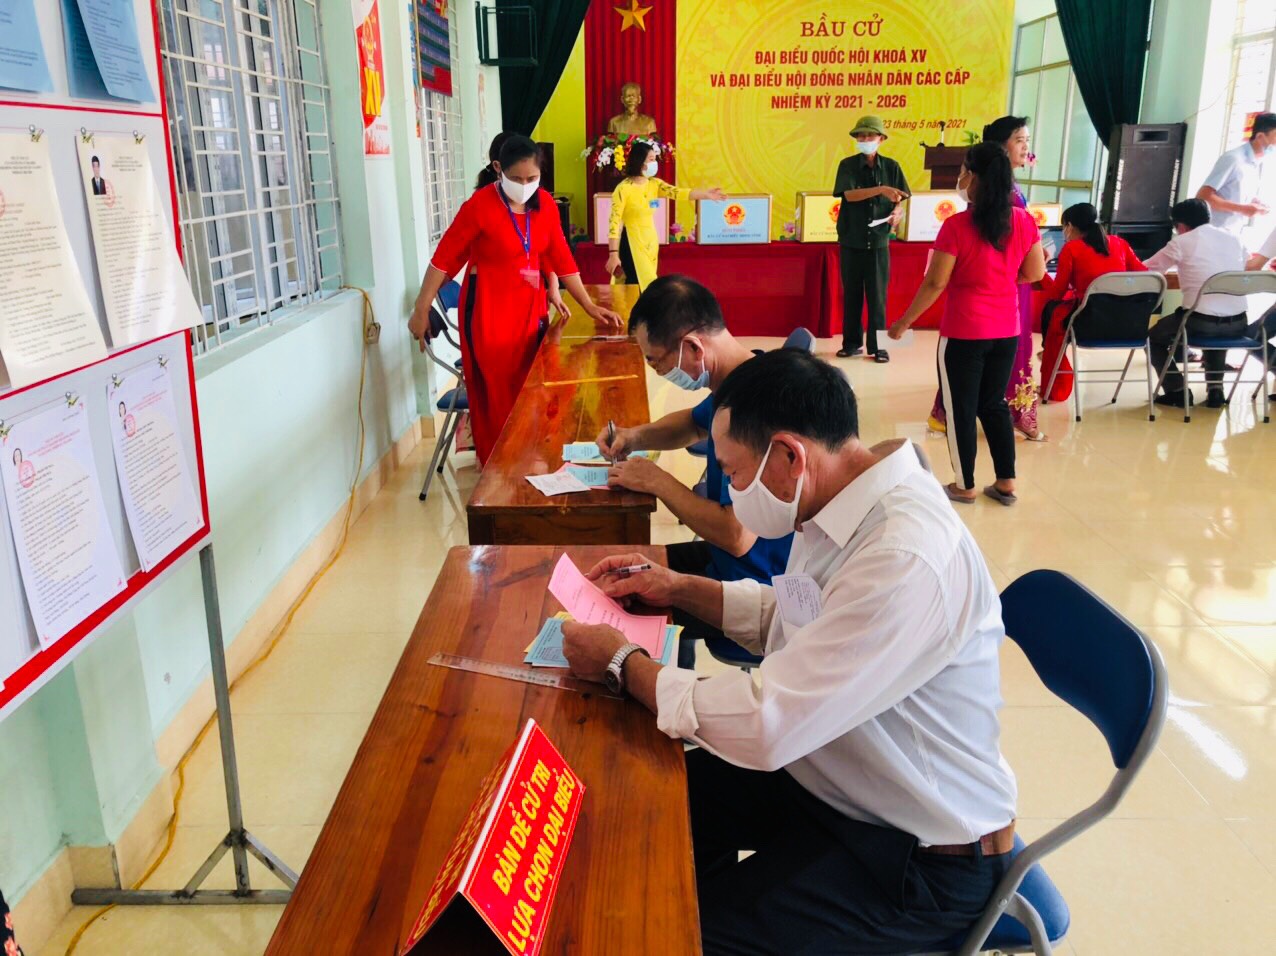 Quảng Ninh chuyển cả hòm phiếu lưu động tới giường bệnh cho bệnh nhân bỏ phiếu - Ảnh 7.